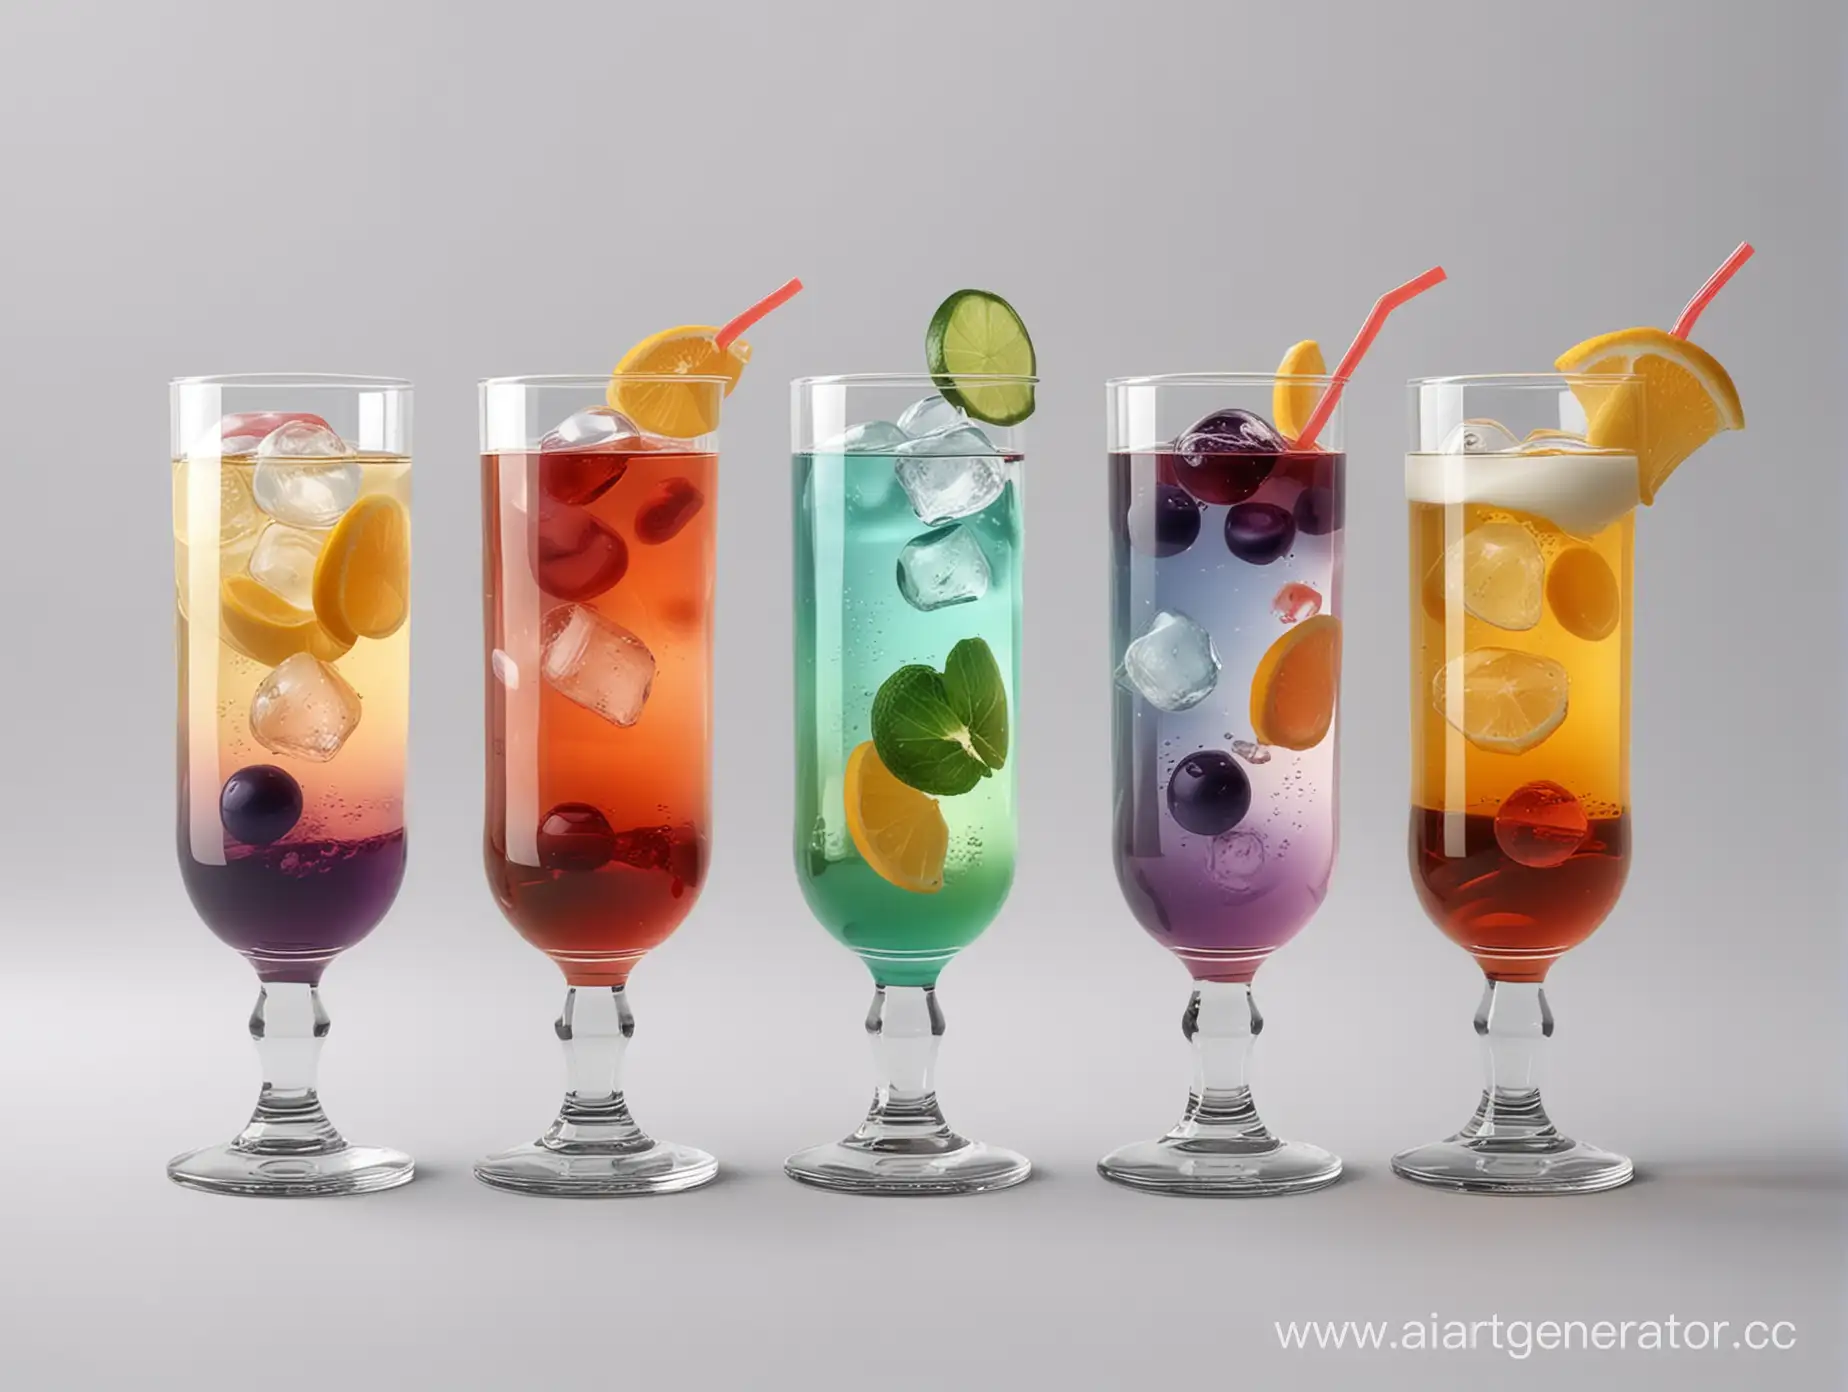 Сгенерируйте фото в стиле реализм, где силиконовые прозрачные капсулы для напитков, с индивидуальными наполнителями разного цвета, плавают в стаканах с напитками. Все они выглядят съедобно,